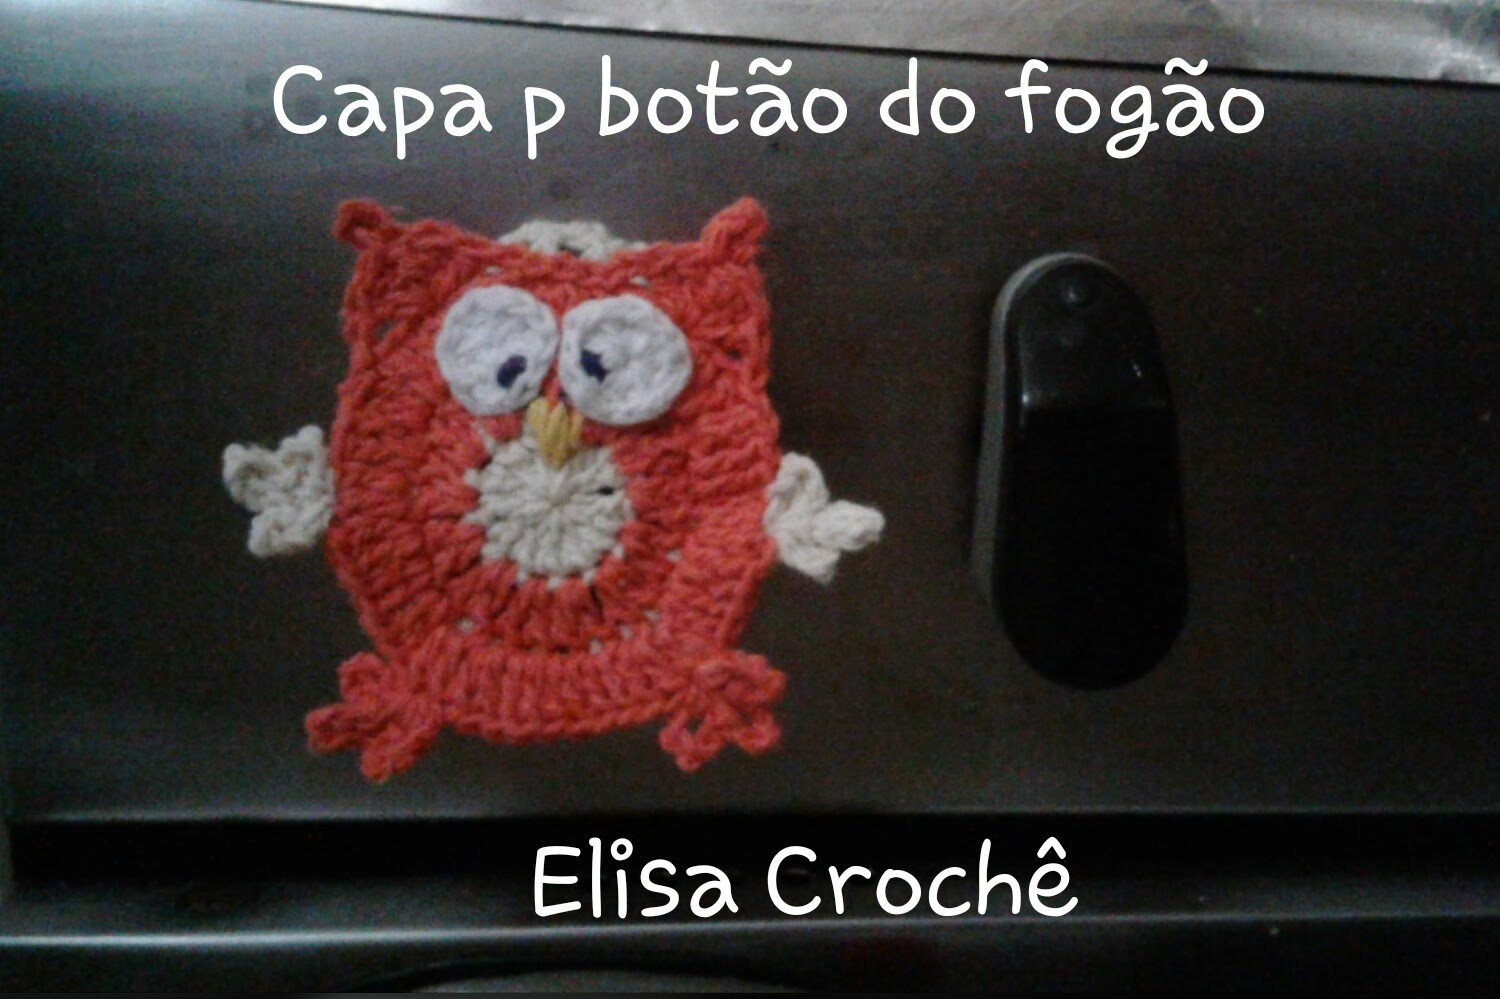 Versão destros:Capa para botão do fogão corujinha sapeca # Elisa Crochê